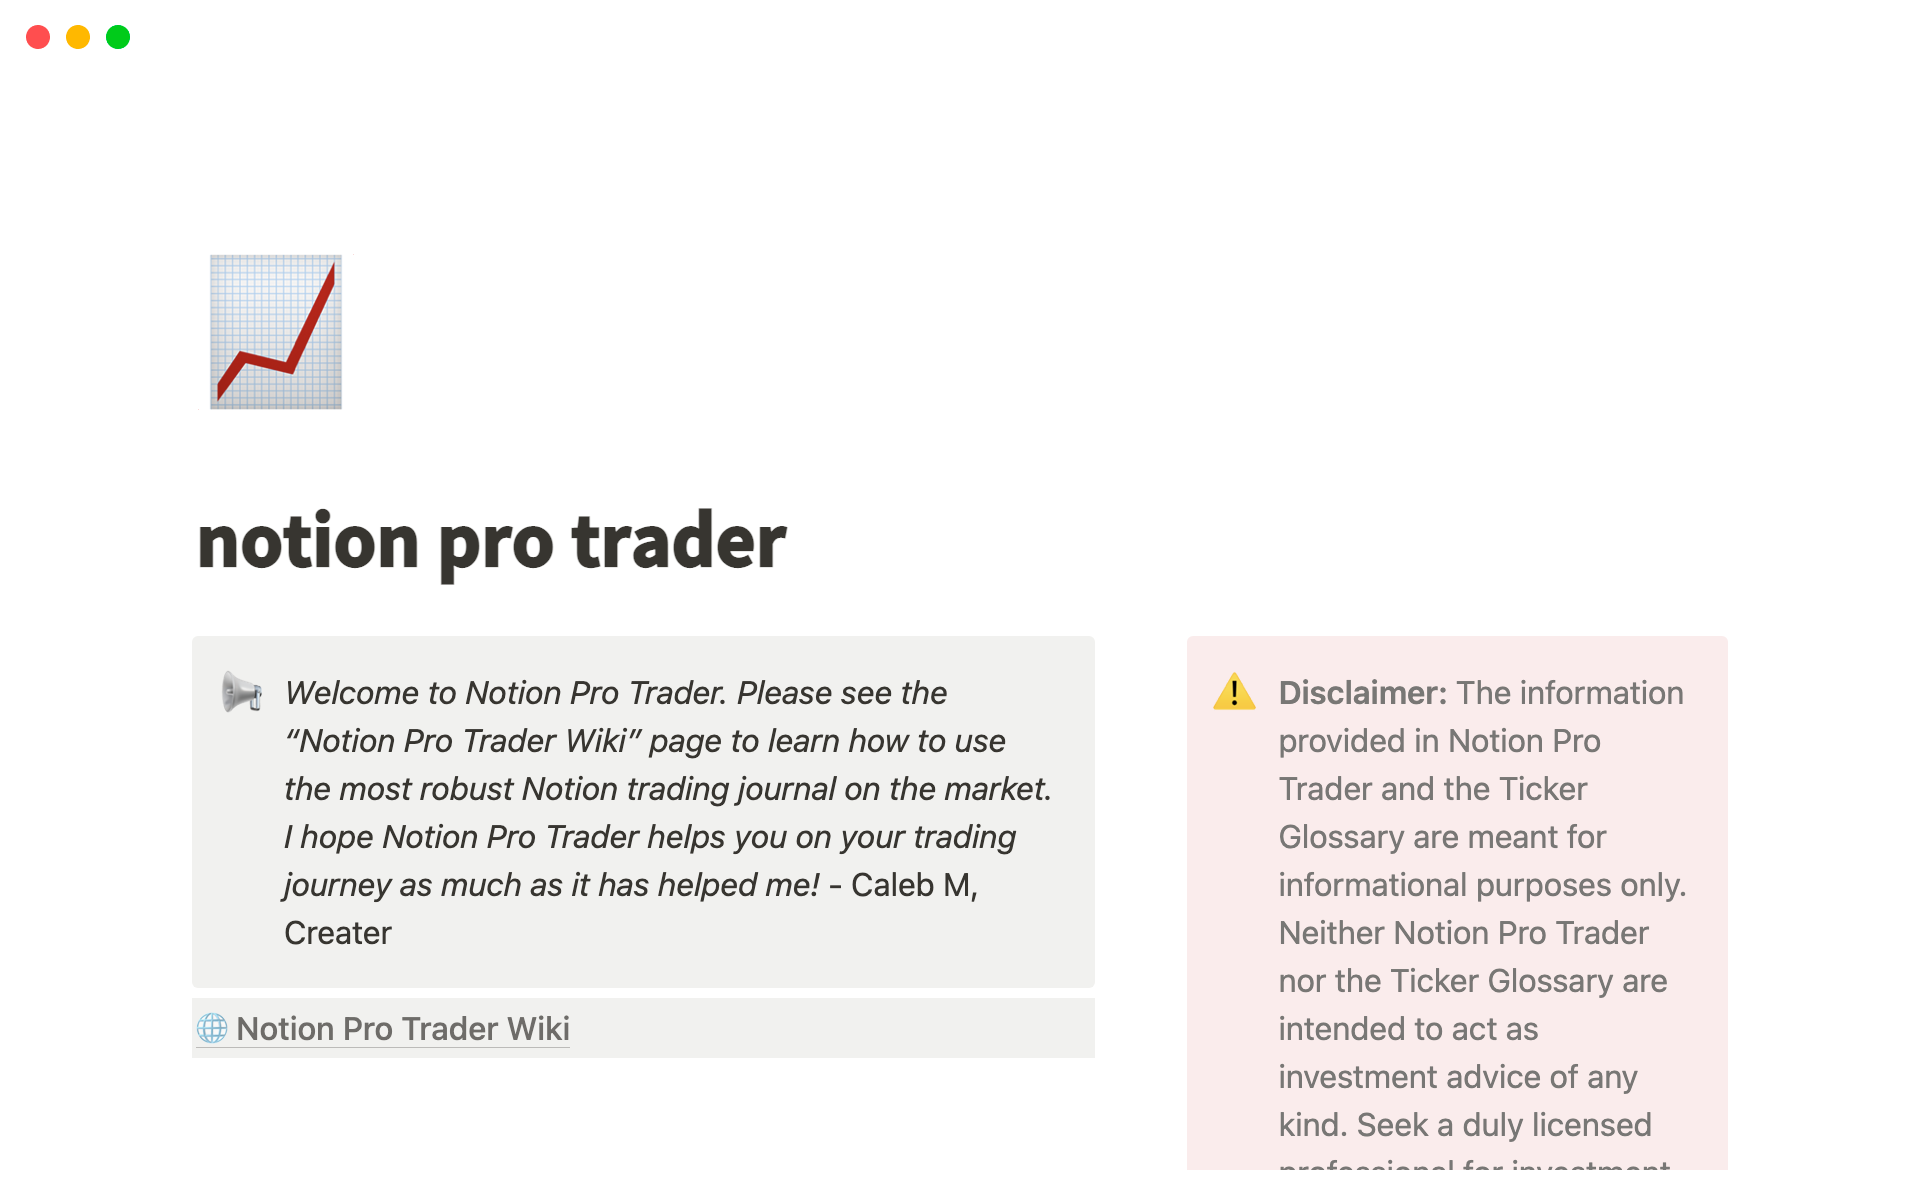 Uma prévia do modelo para Notion Pro Trader